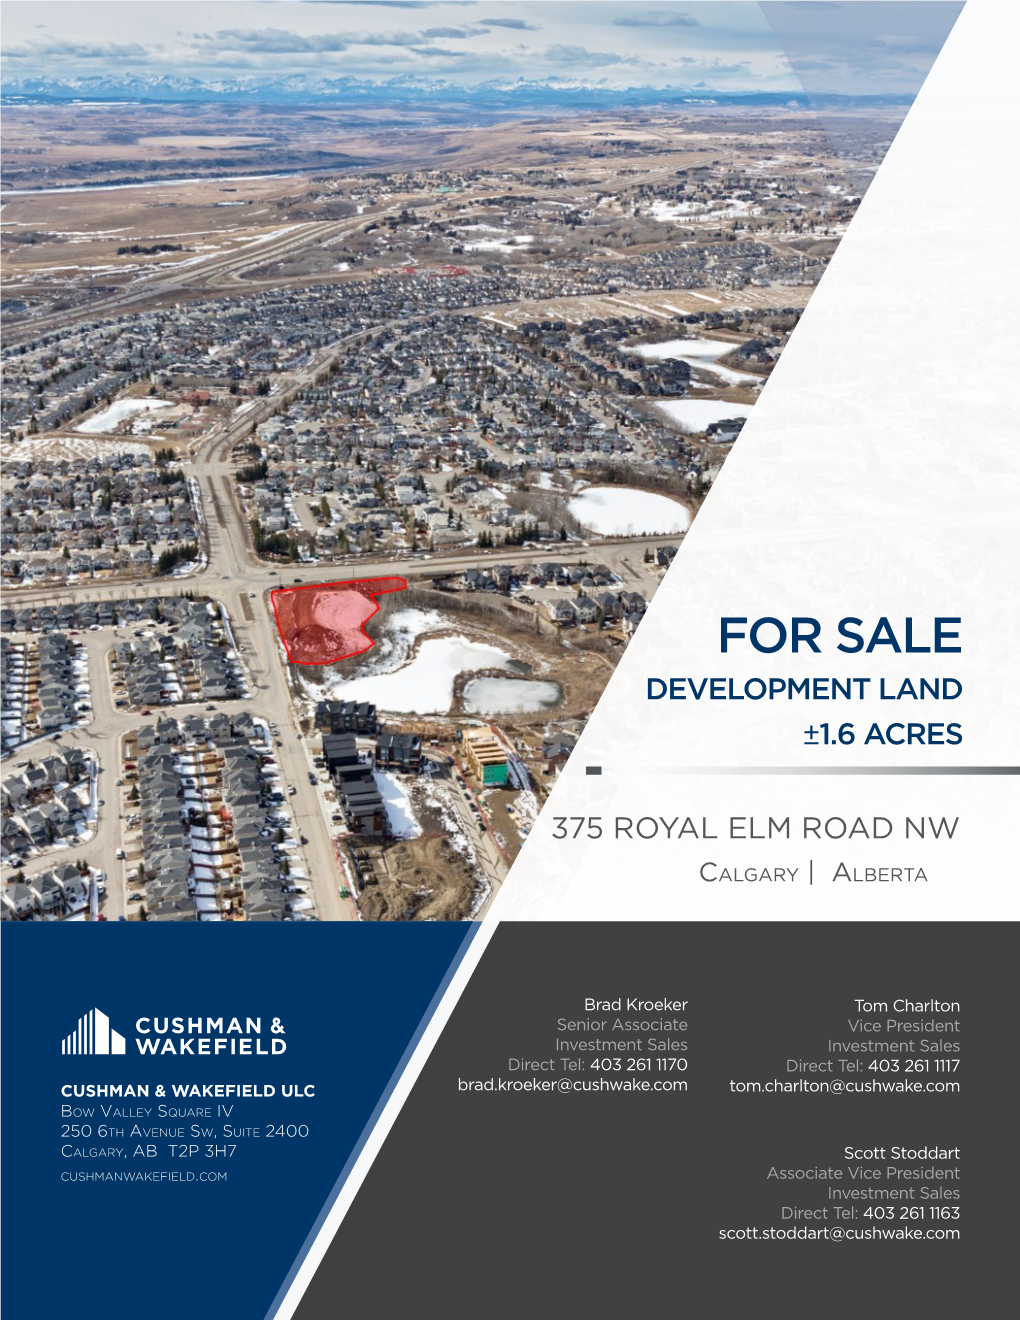 For Sale Development Land ±1.6 Acres